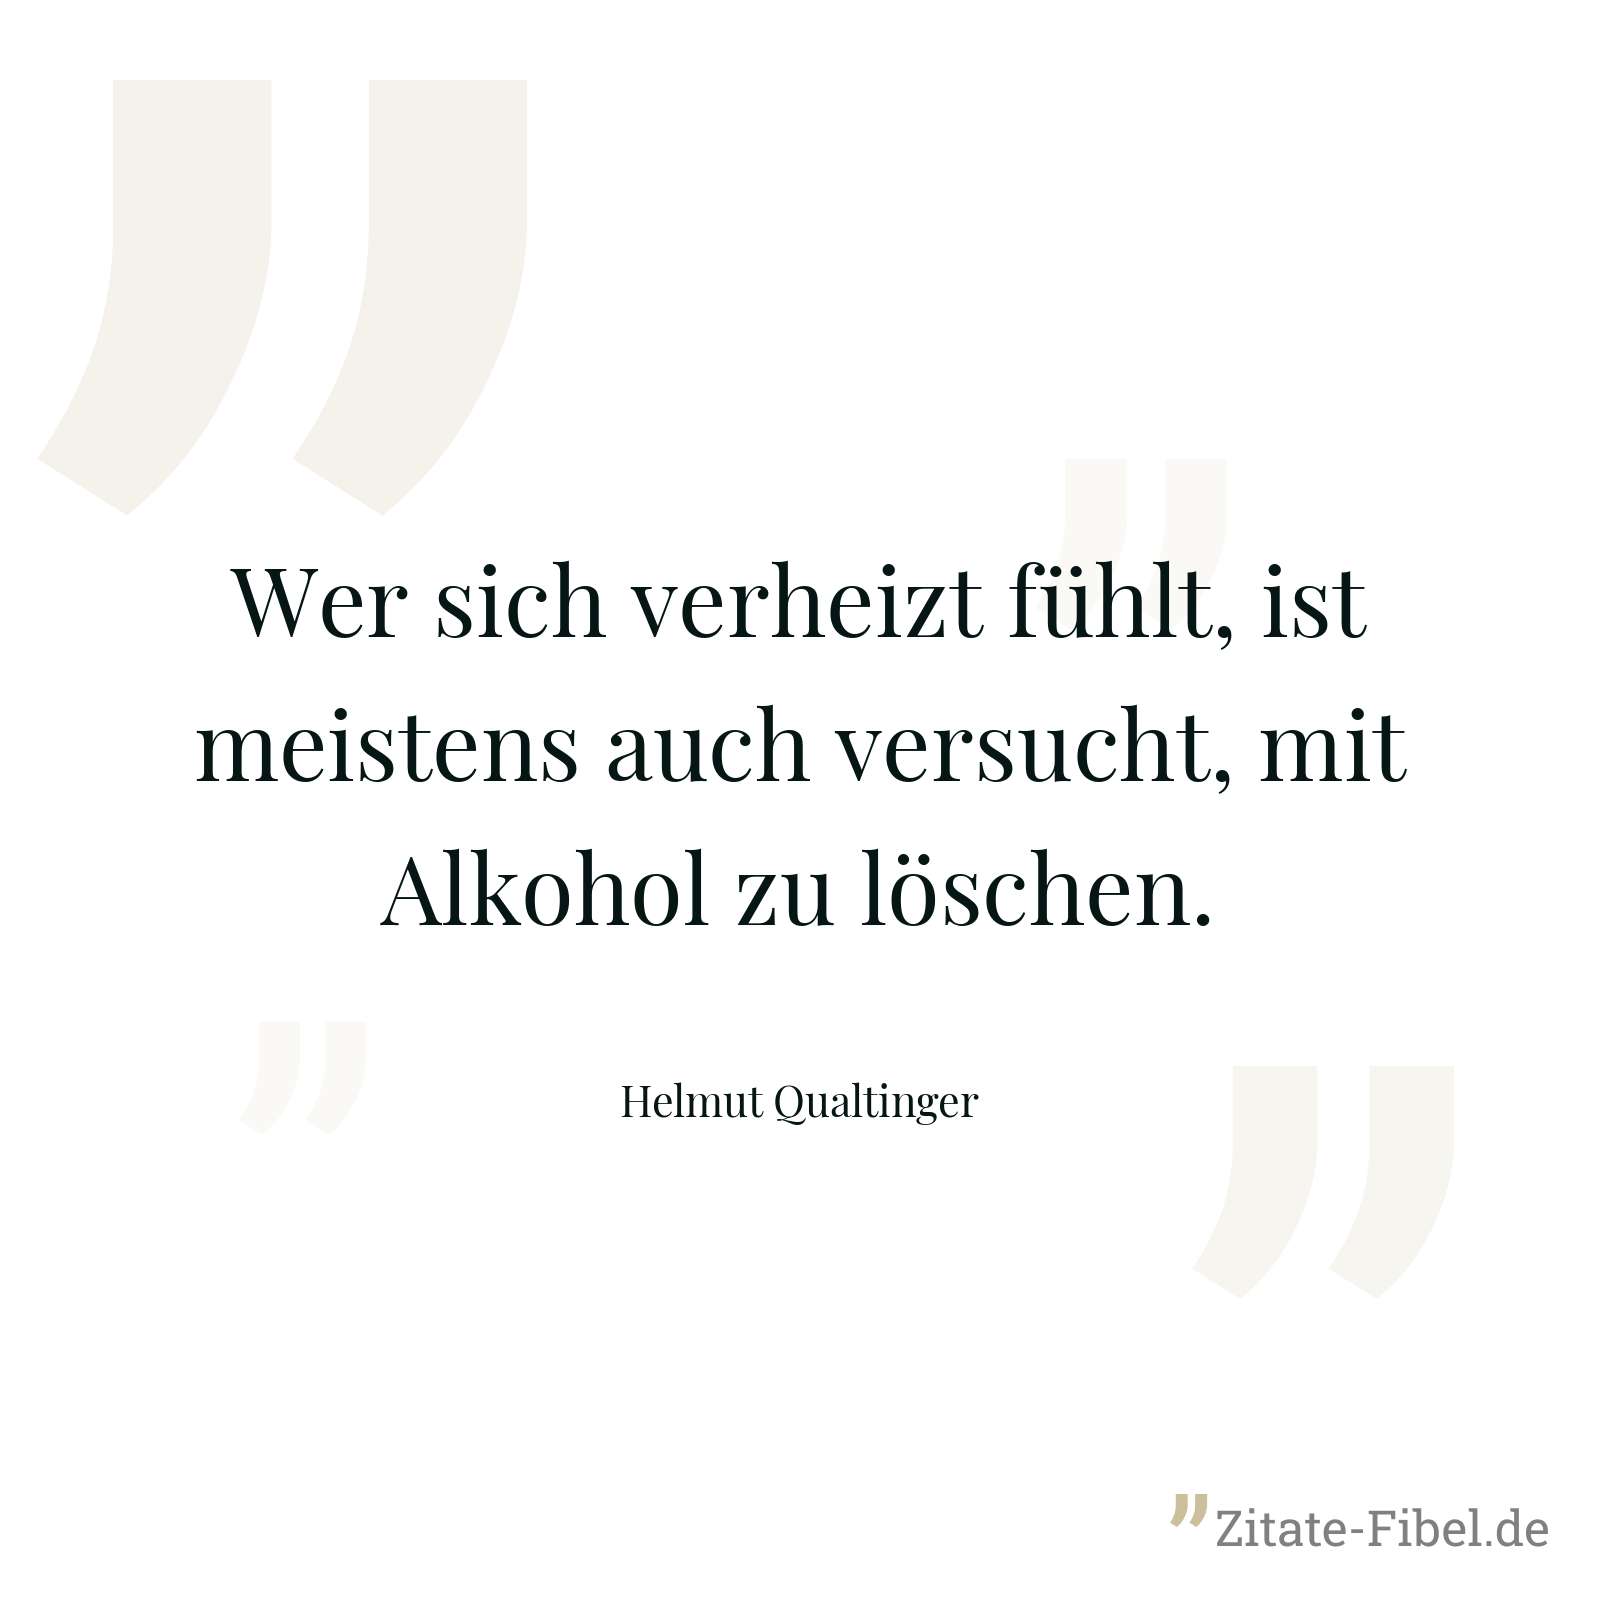 Wer sich verheizt fühlt, ist meistens auch versucht, mit Alkohol zu löschen. - Helmut Qualtinger